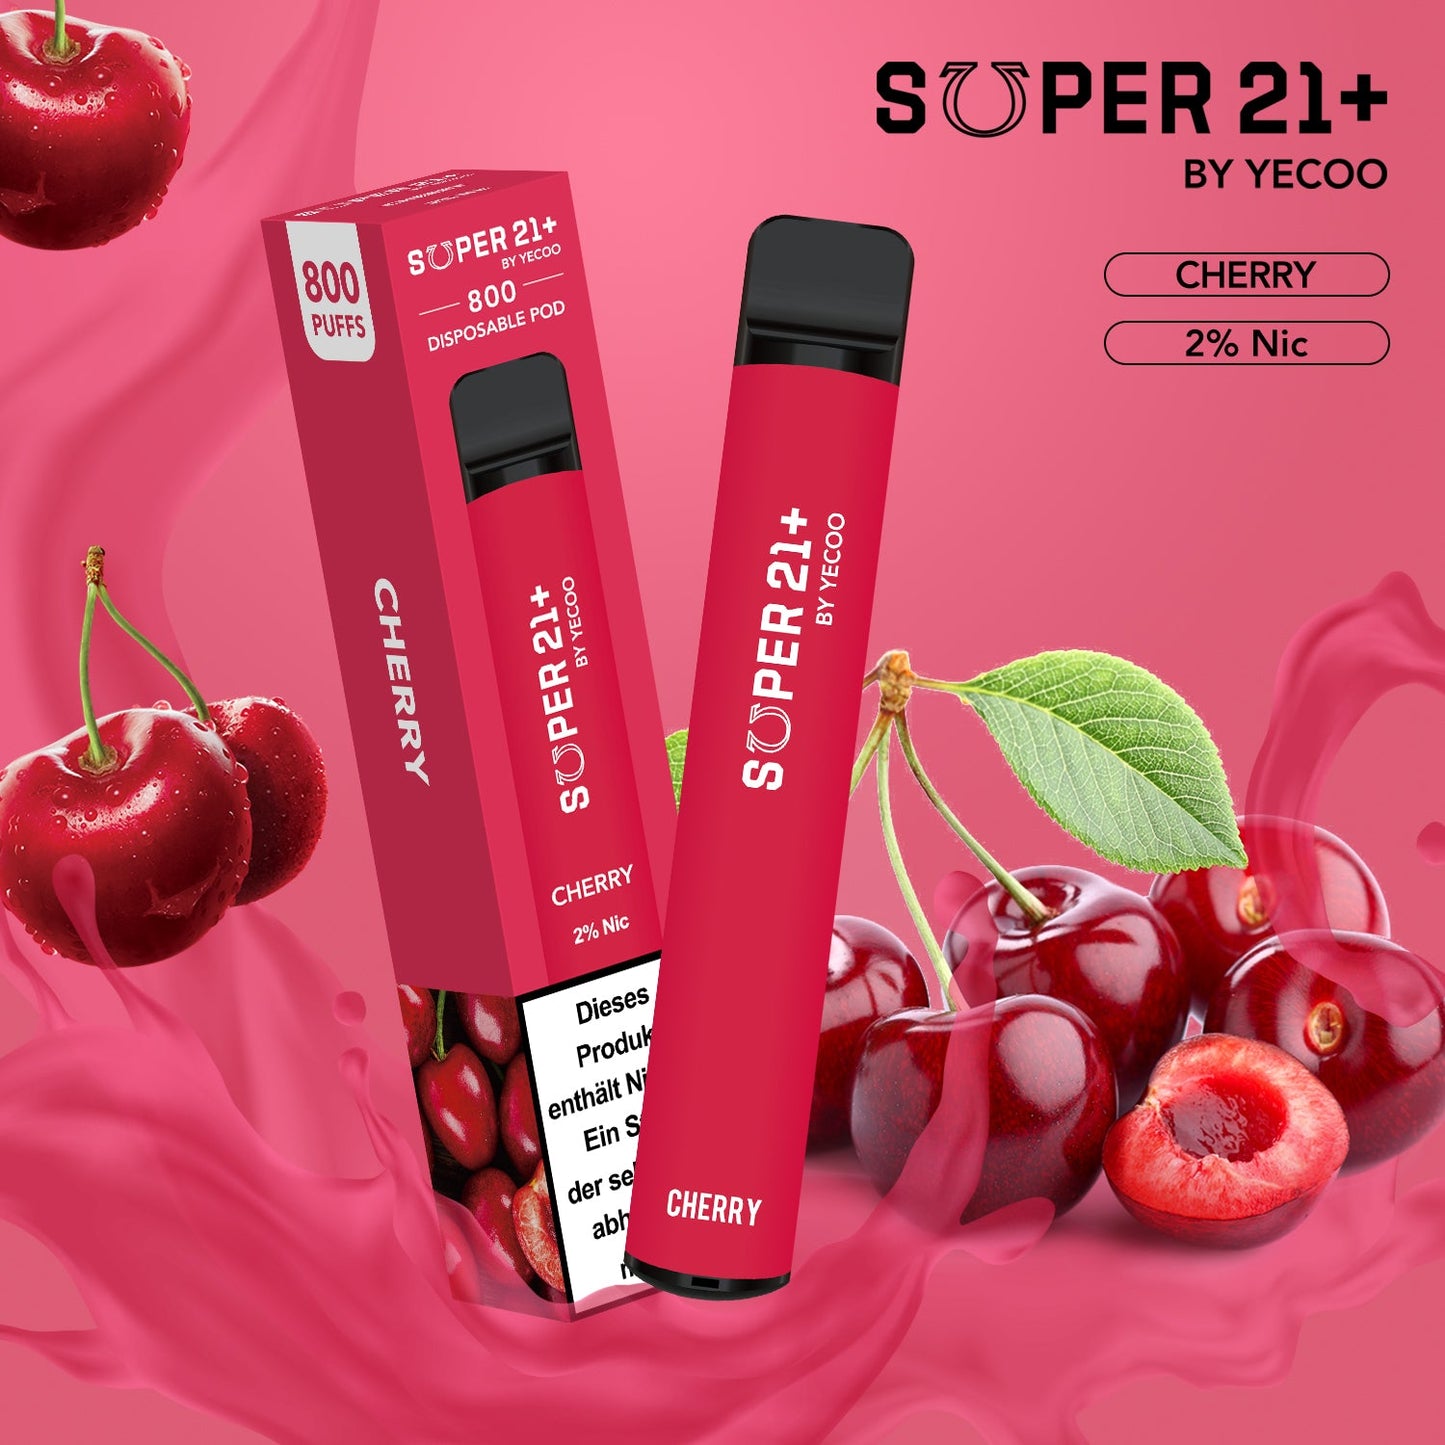 Super21+ 800 Cherry (2% Nic)